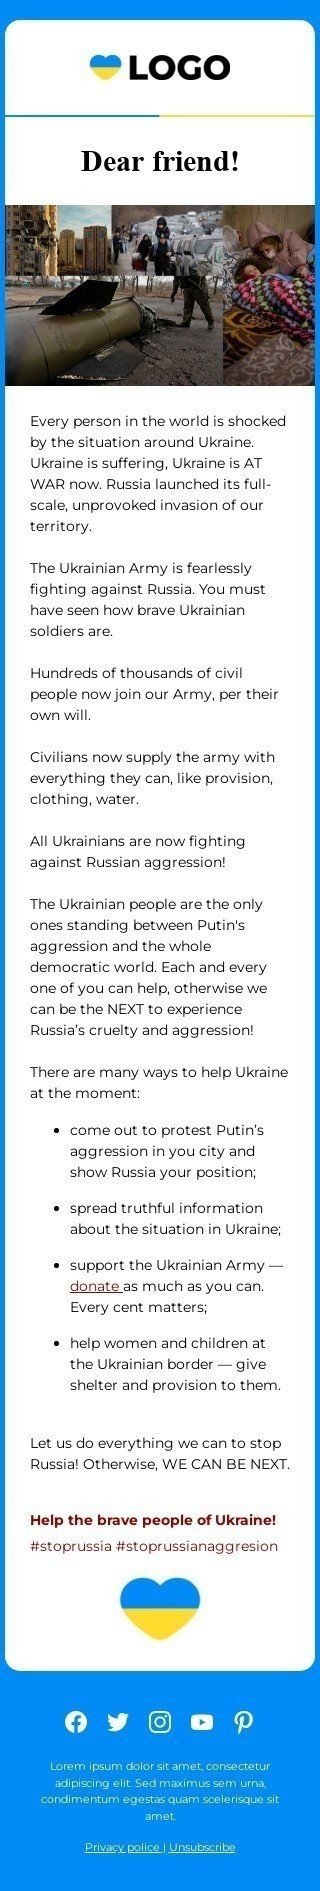 The "Spread a word Russian Aggression in Ukraine" email template Visualizzazione mobile